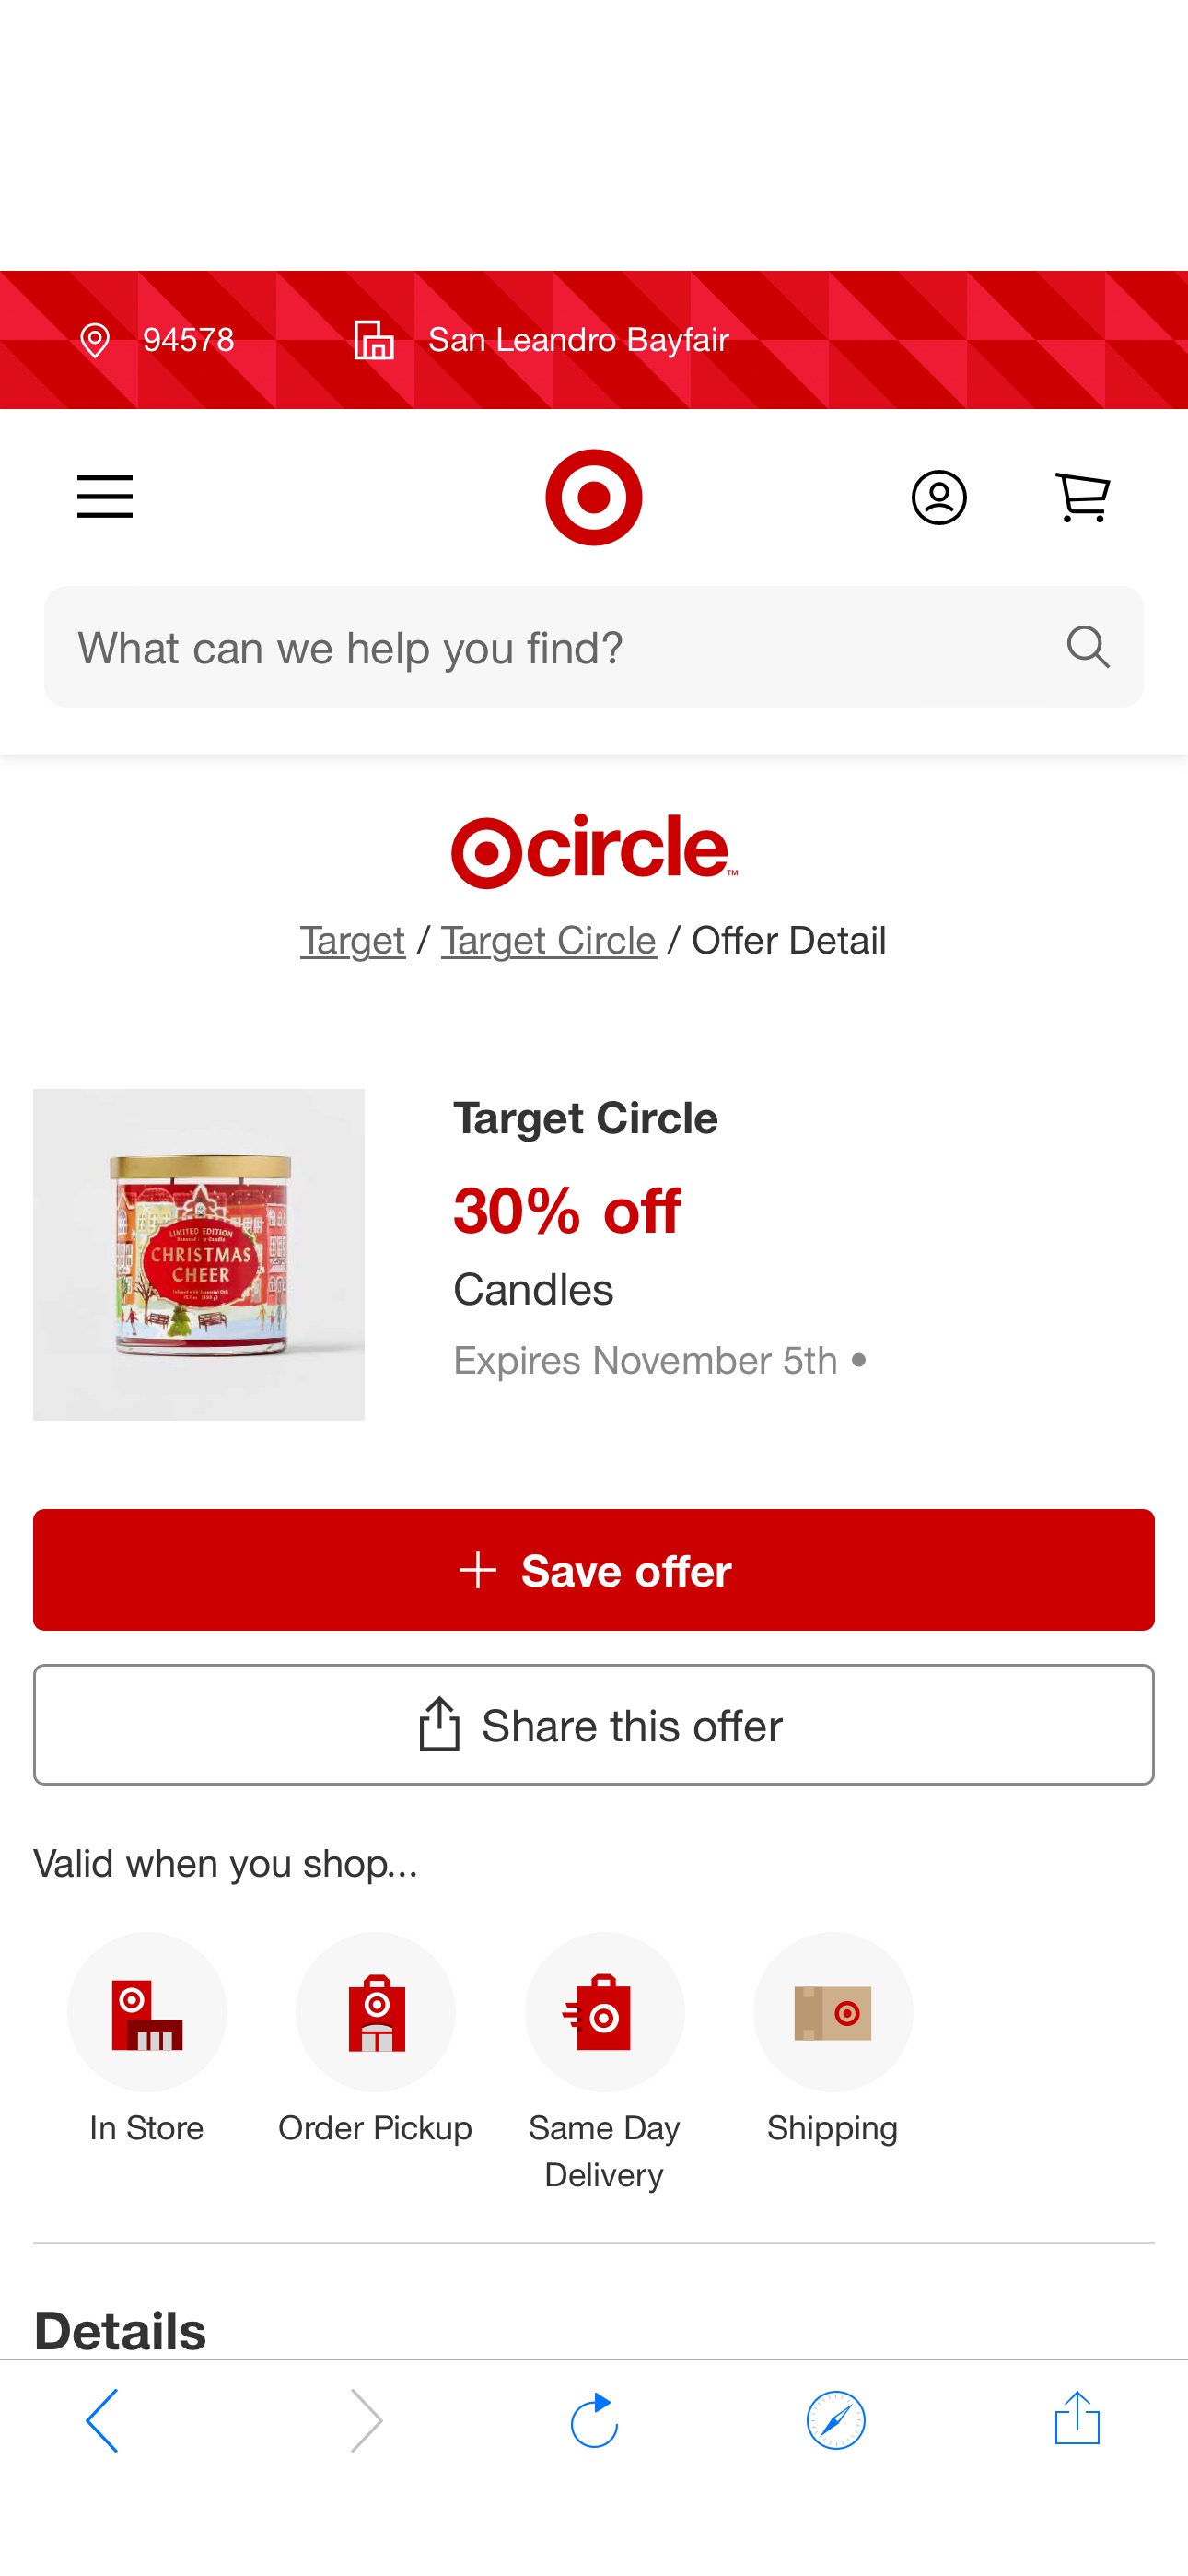 Target circle多款蜡烛7折